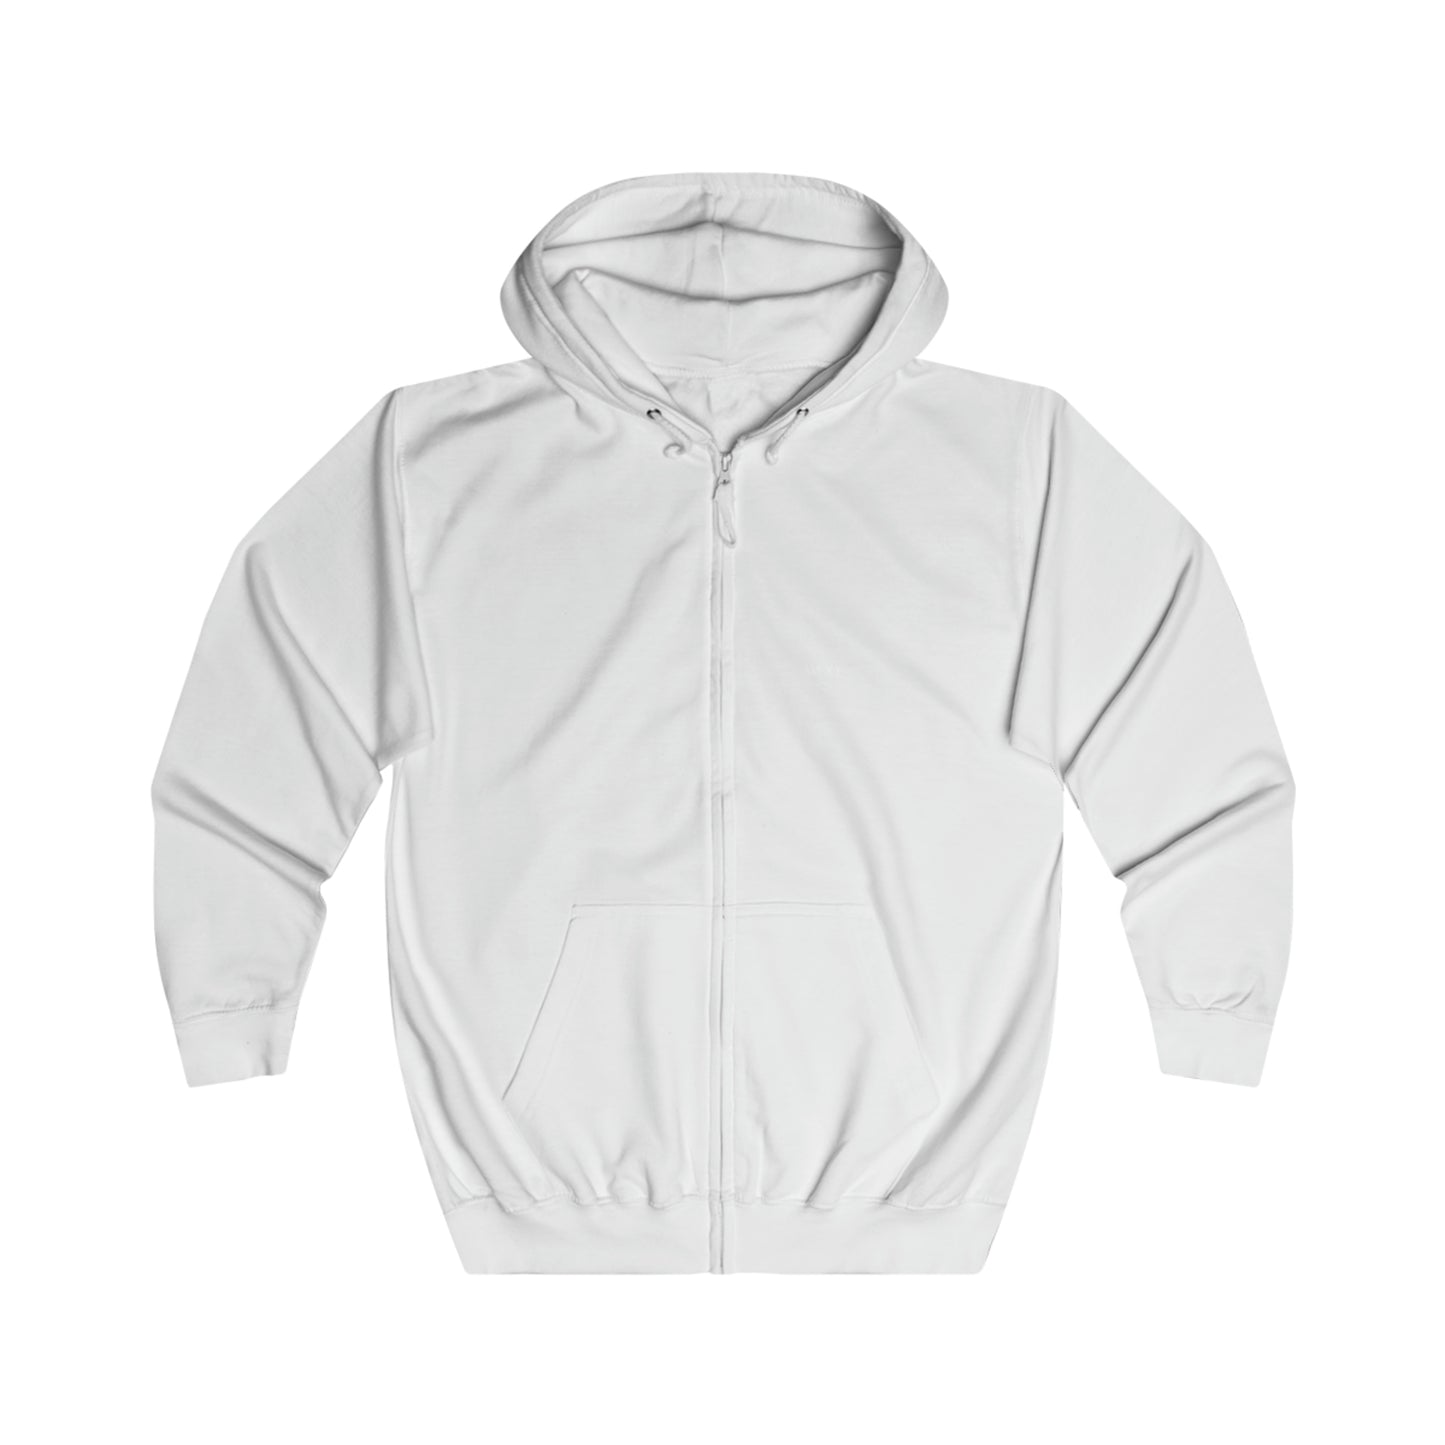 Just Bliss - full zip hoodie